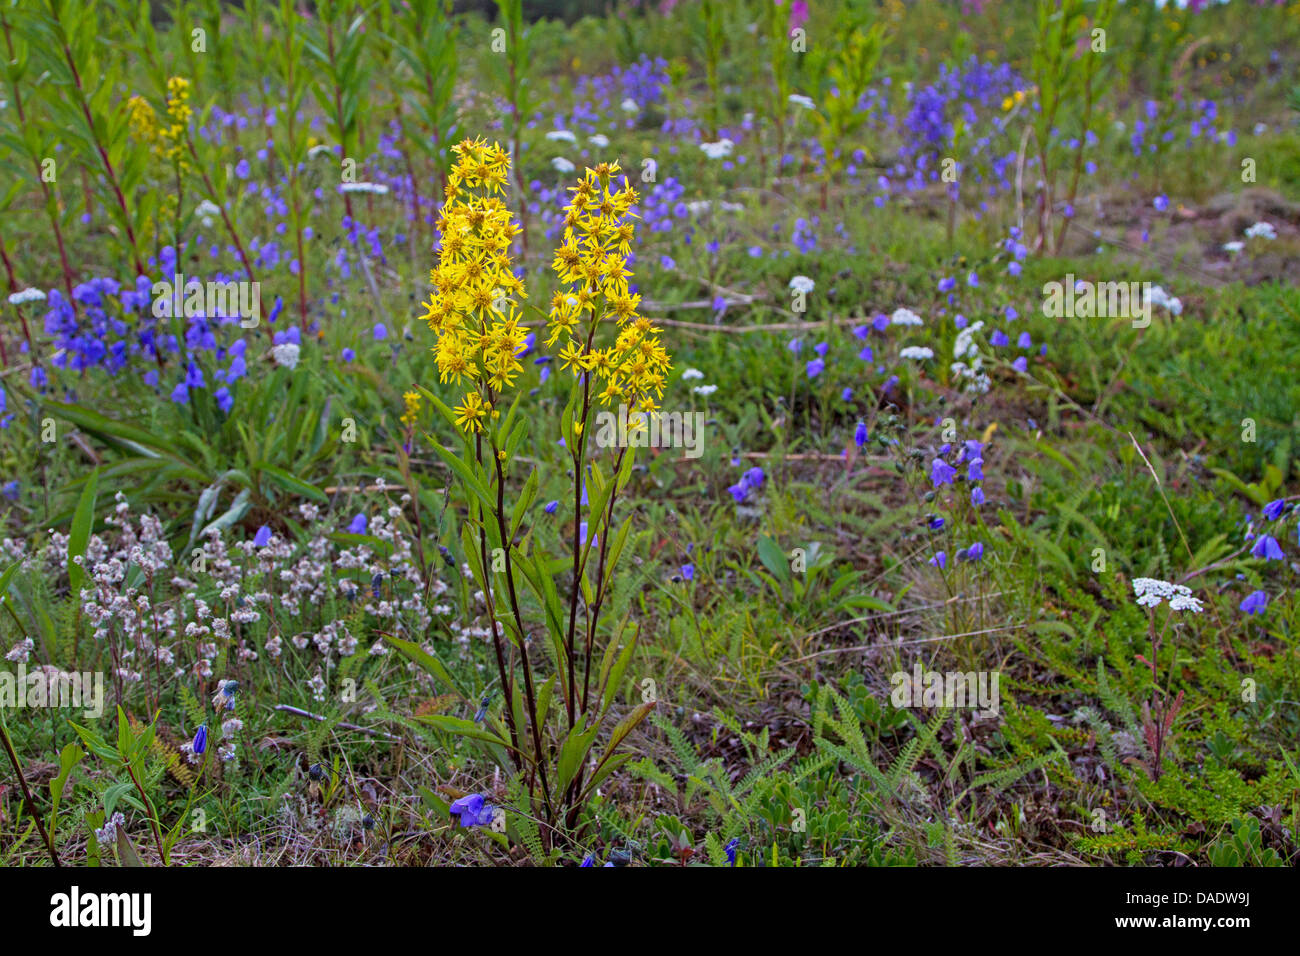 goldenrod, golden rod (Solidago virgaurea), with bellflowers in a meadow, Russia, Kolahalbinsel Stock Photo